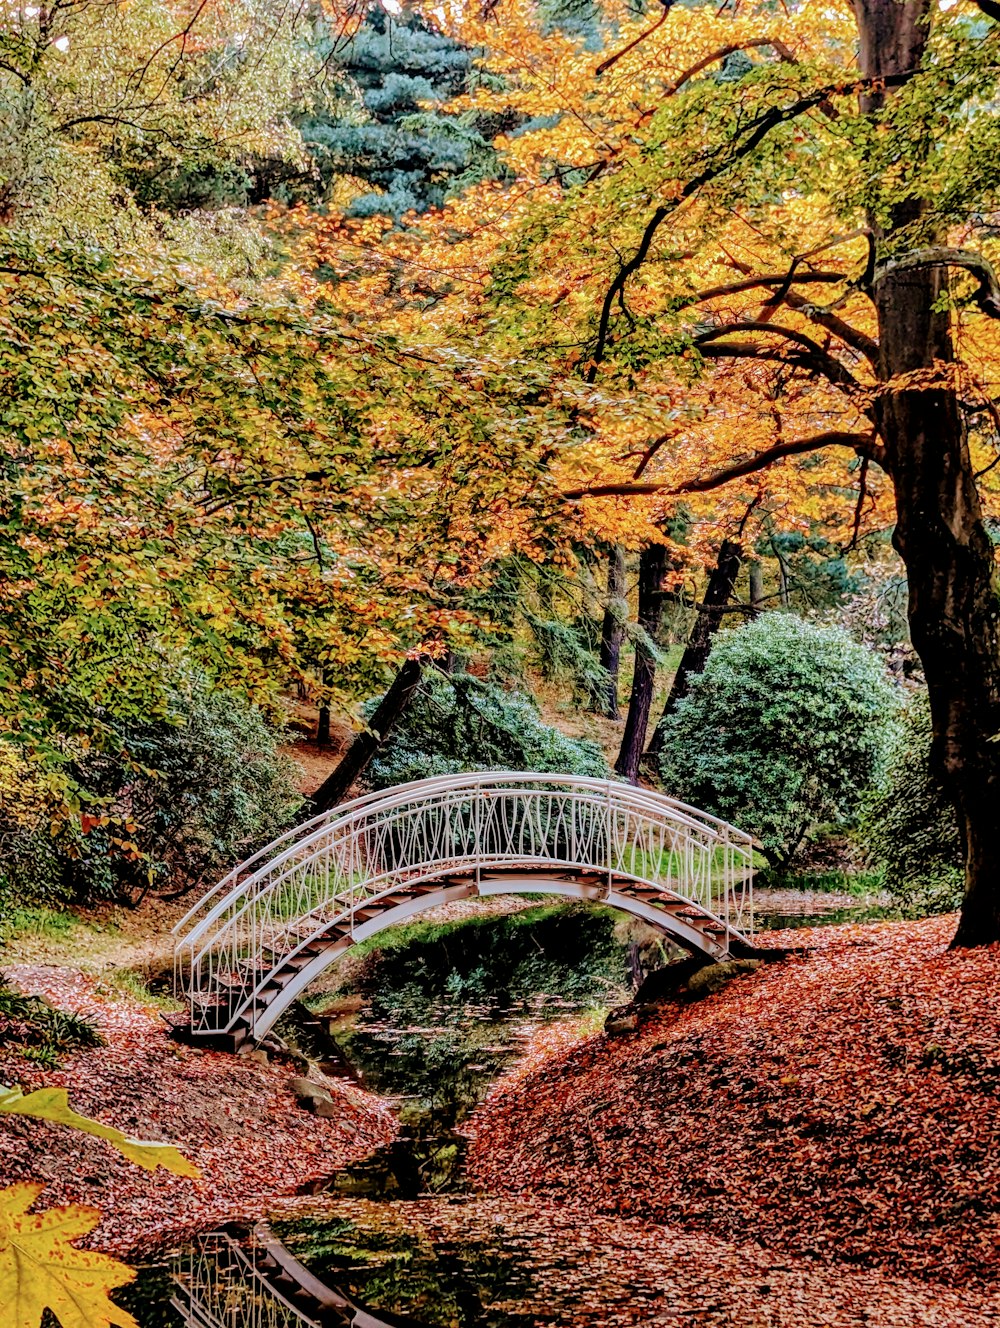 a bridge over a small stream in a park